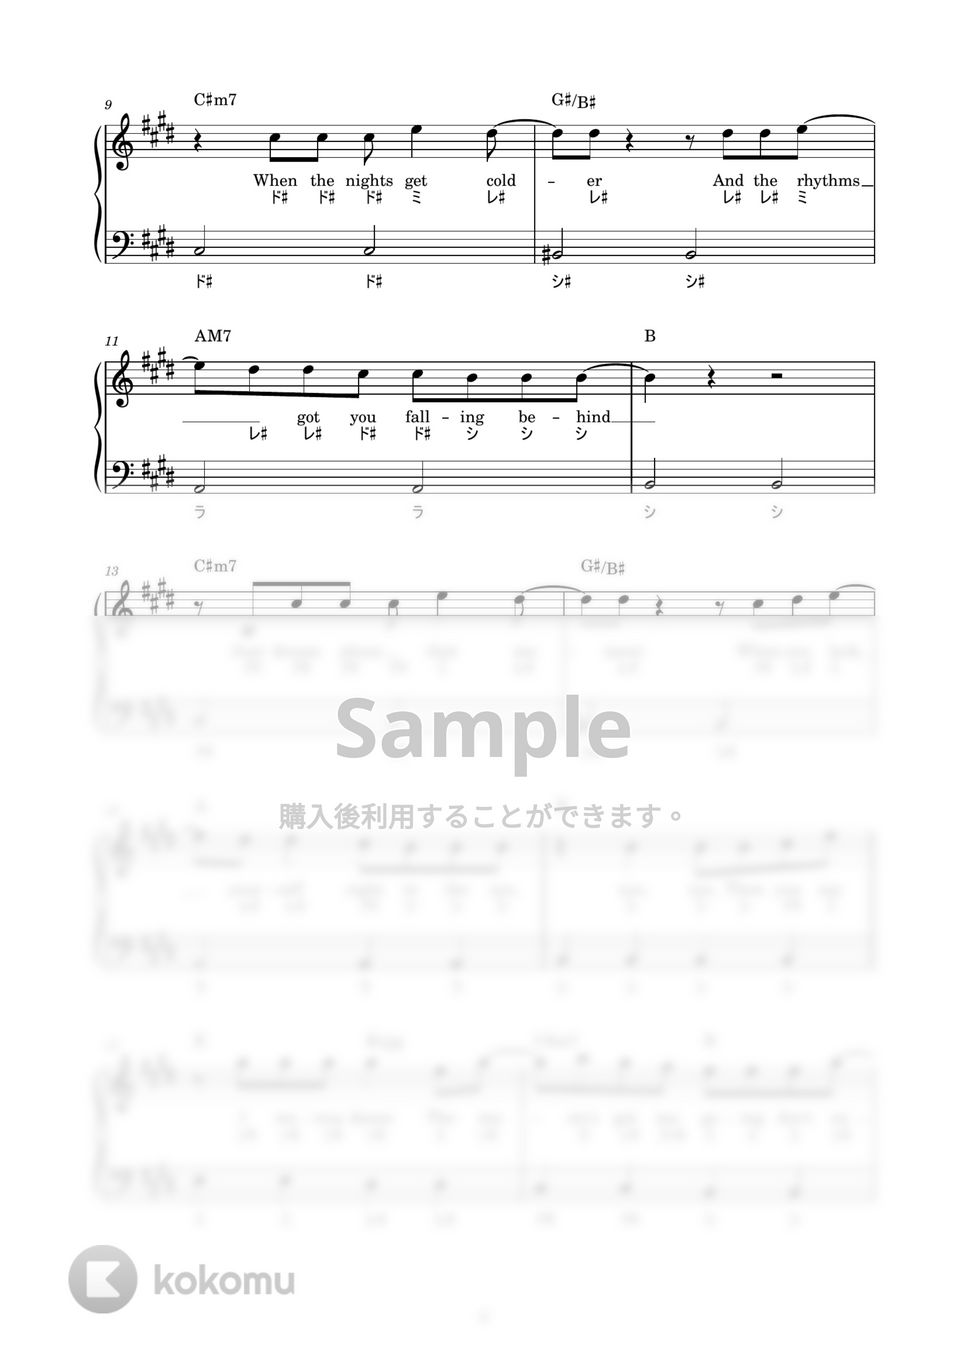 防弾少年団(BTS) - Permission to Dance (かんたん / 歌詞付き / ドレミ付き / 初心者) by piano.tokyo